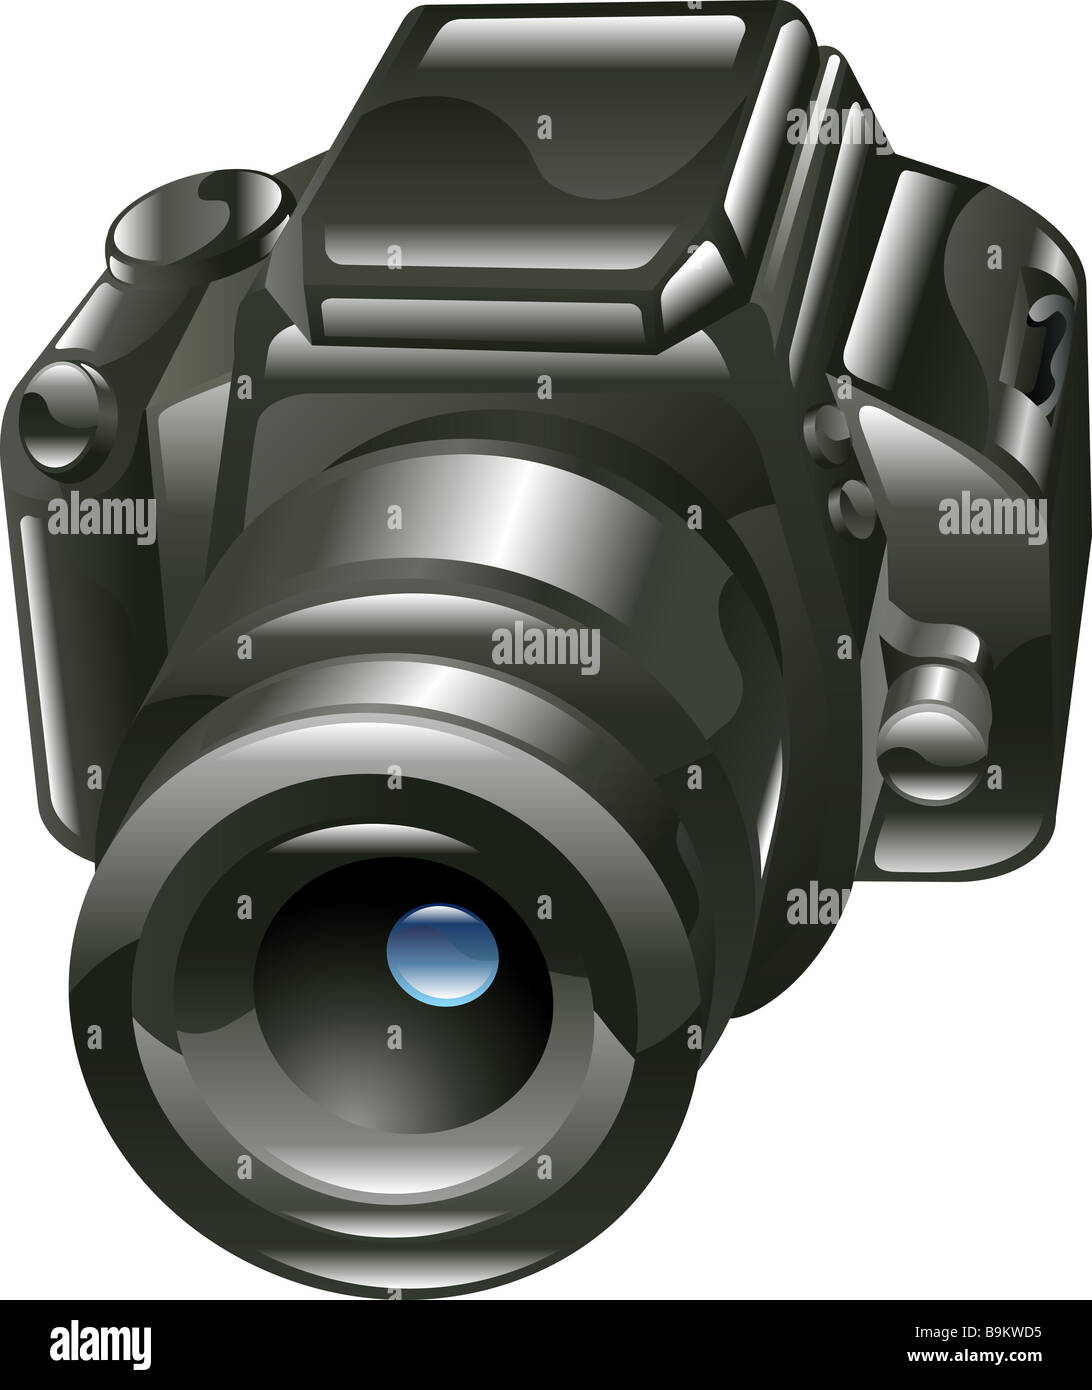 A stylised shiny digital camera illustration or icon Stock Photo